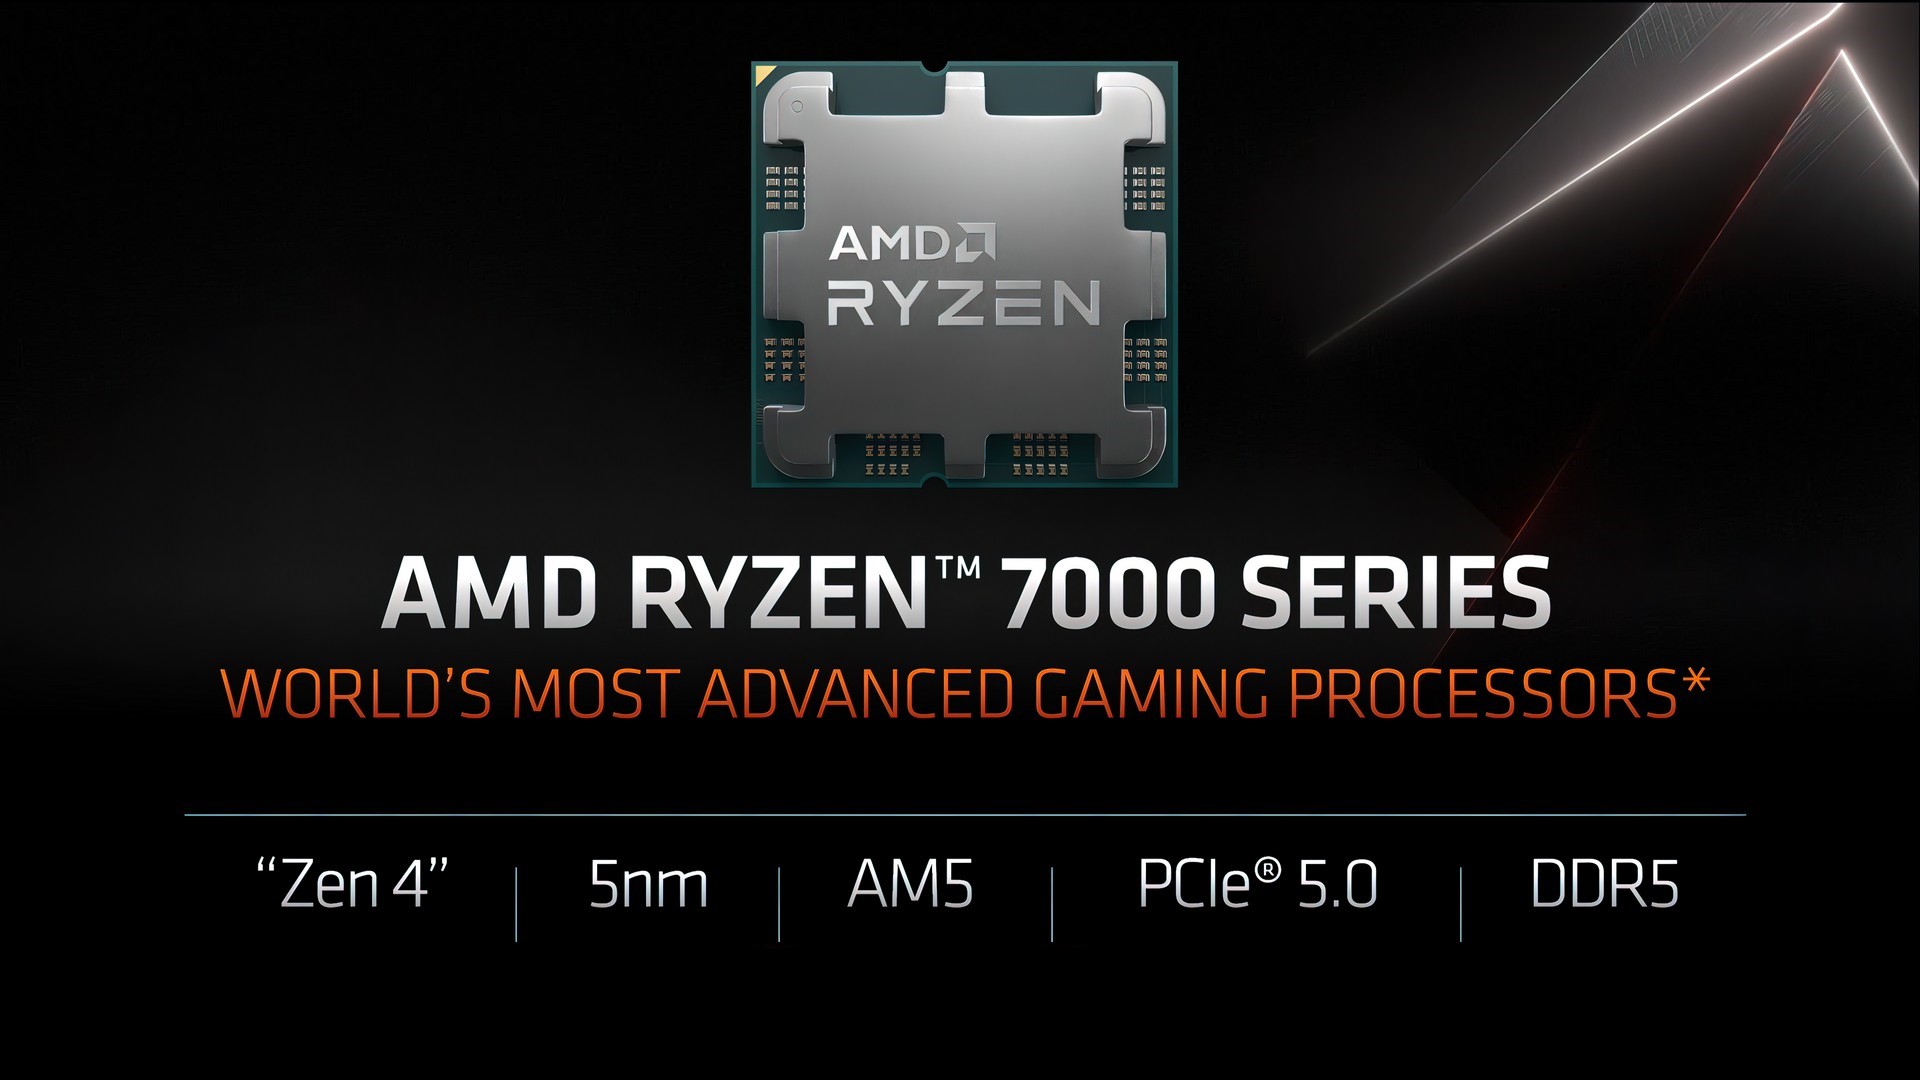 AMD RYZEN 7000 series features